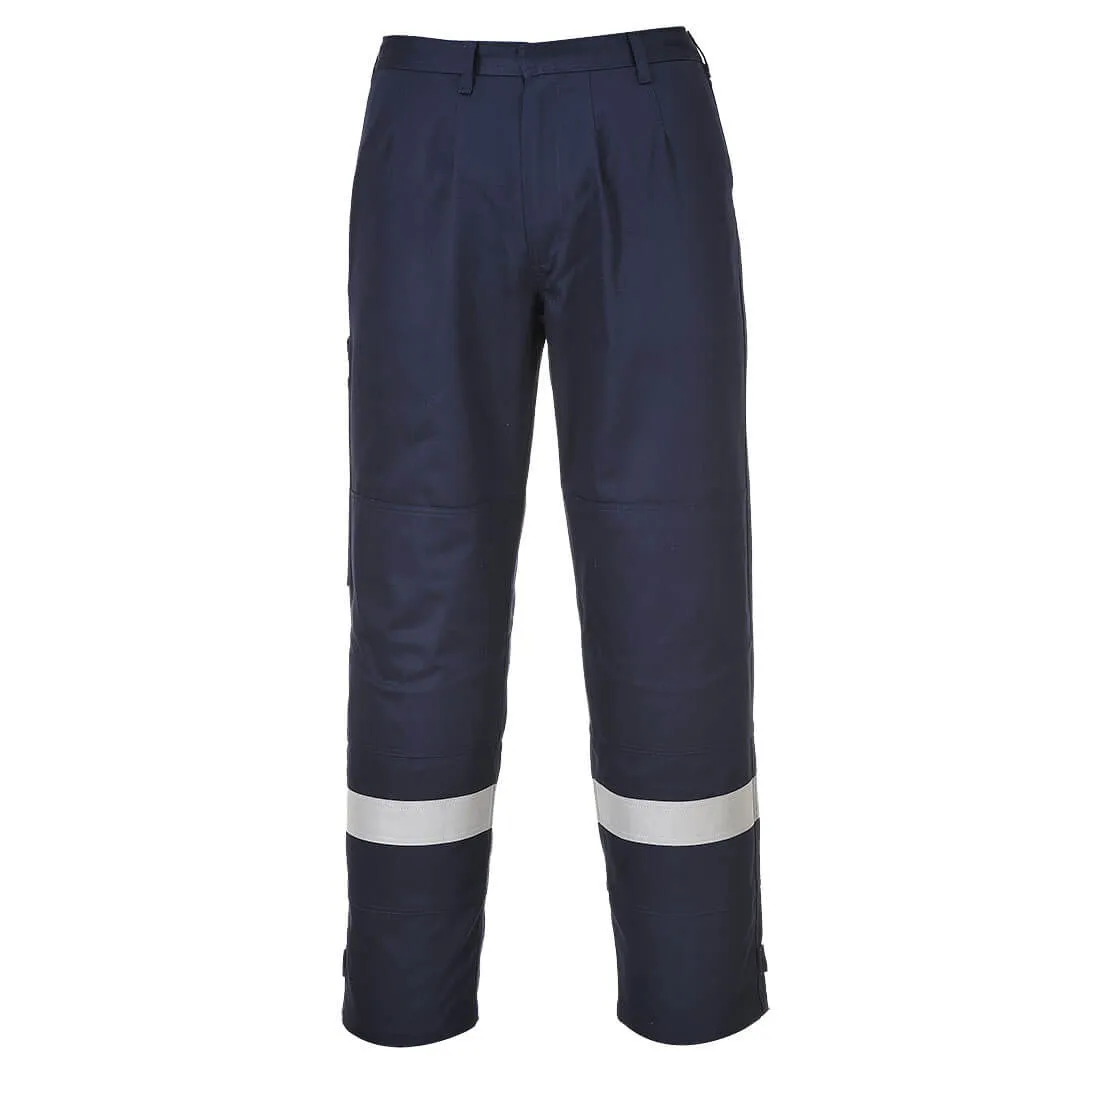 Biz Flame Plus Mens Flame Resistant Trousers - Navy Blue, 3XL, 32"